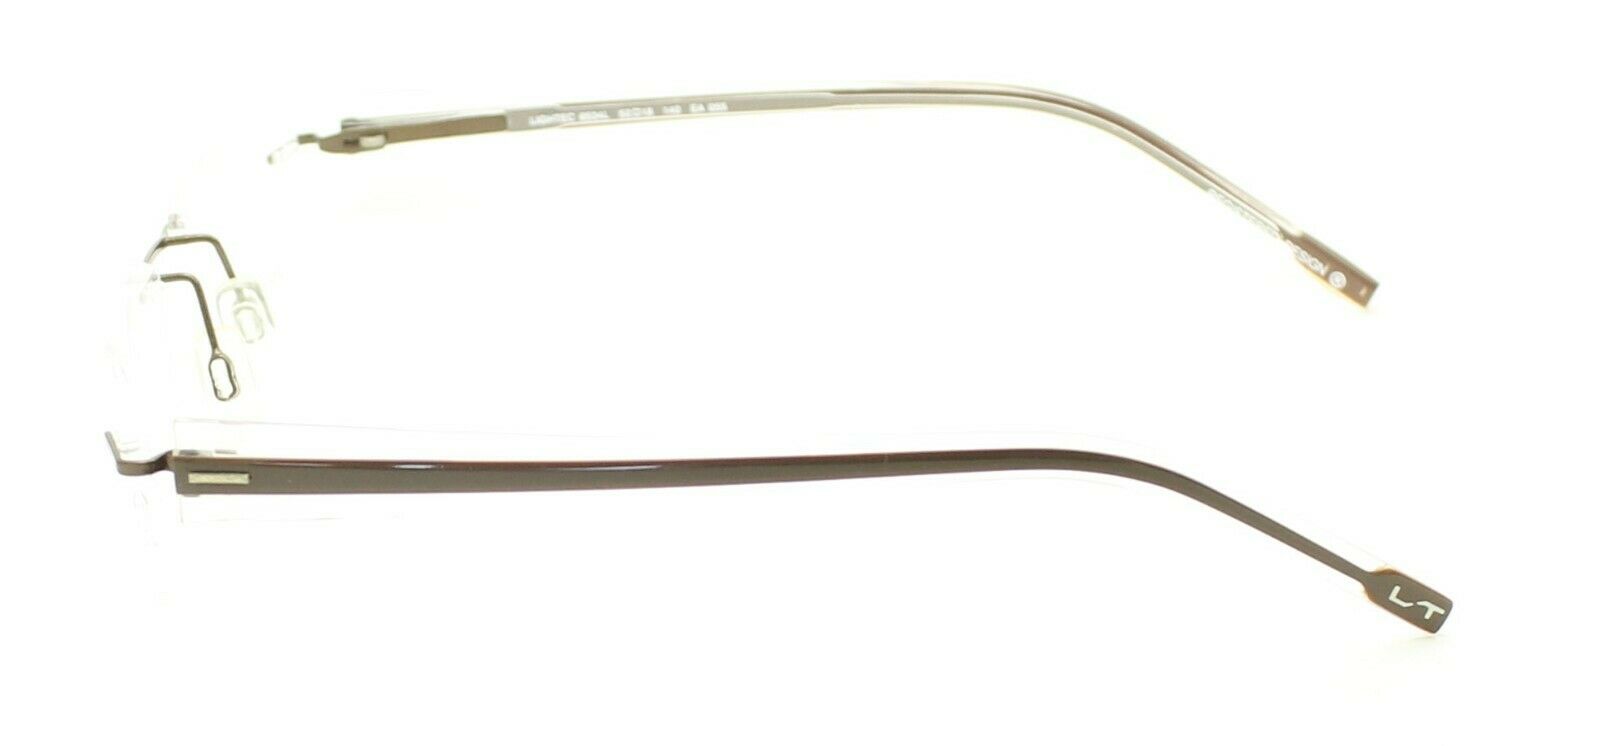 MOREL France LIGHTEC 6534L 52mm Eyewear FRAMES Glasses RX Optical Eyeglasses New